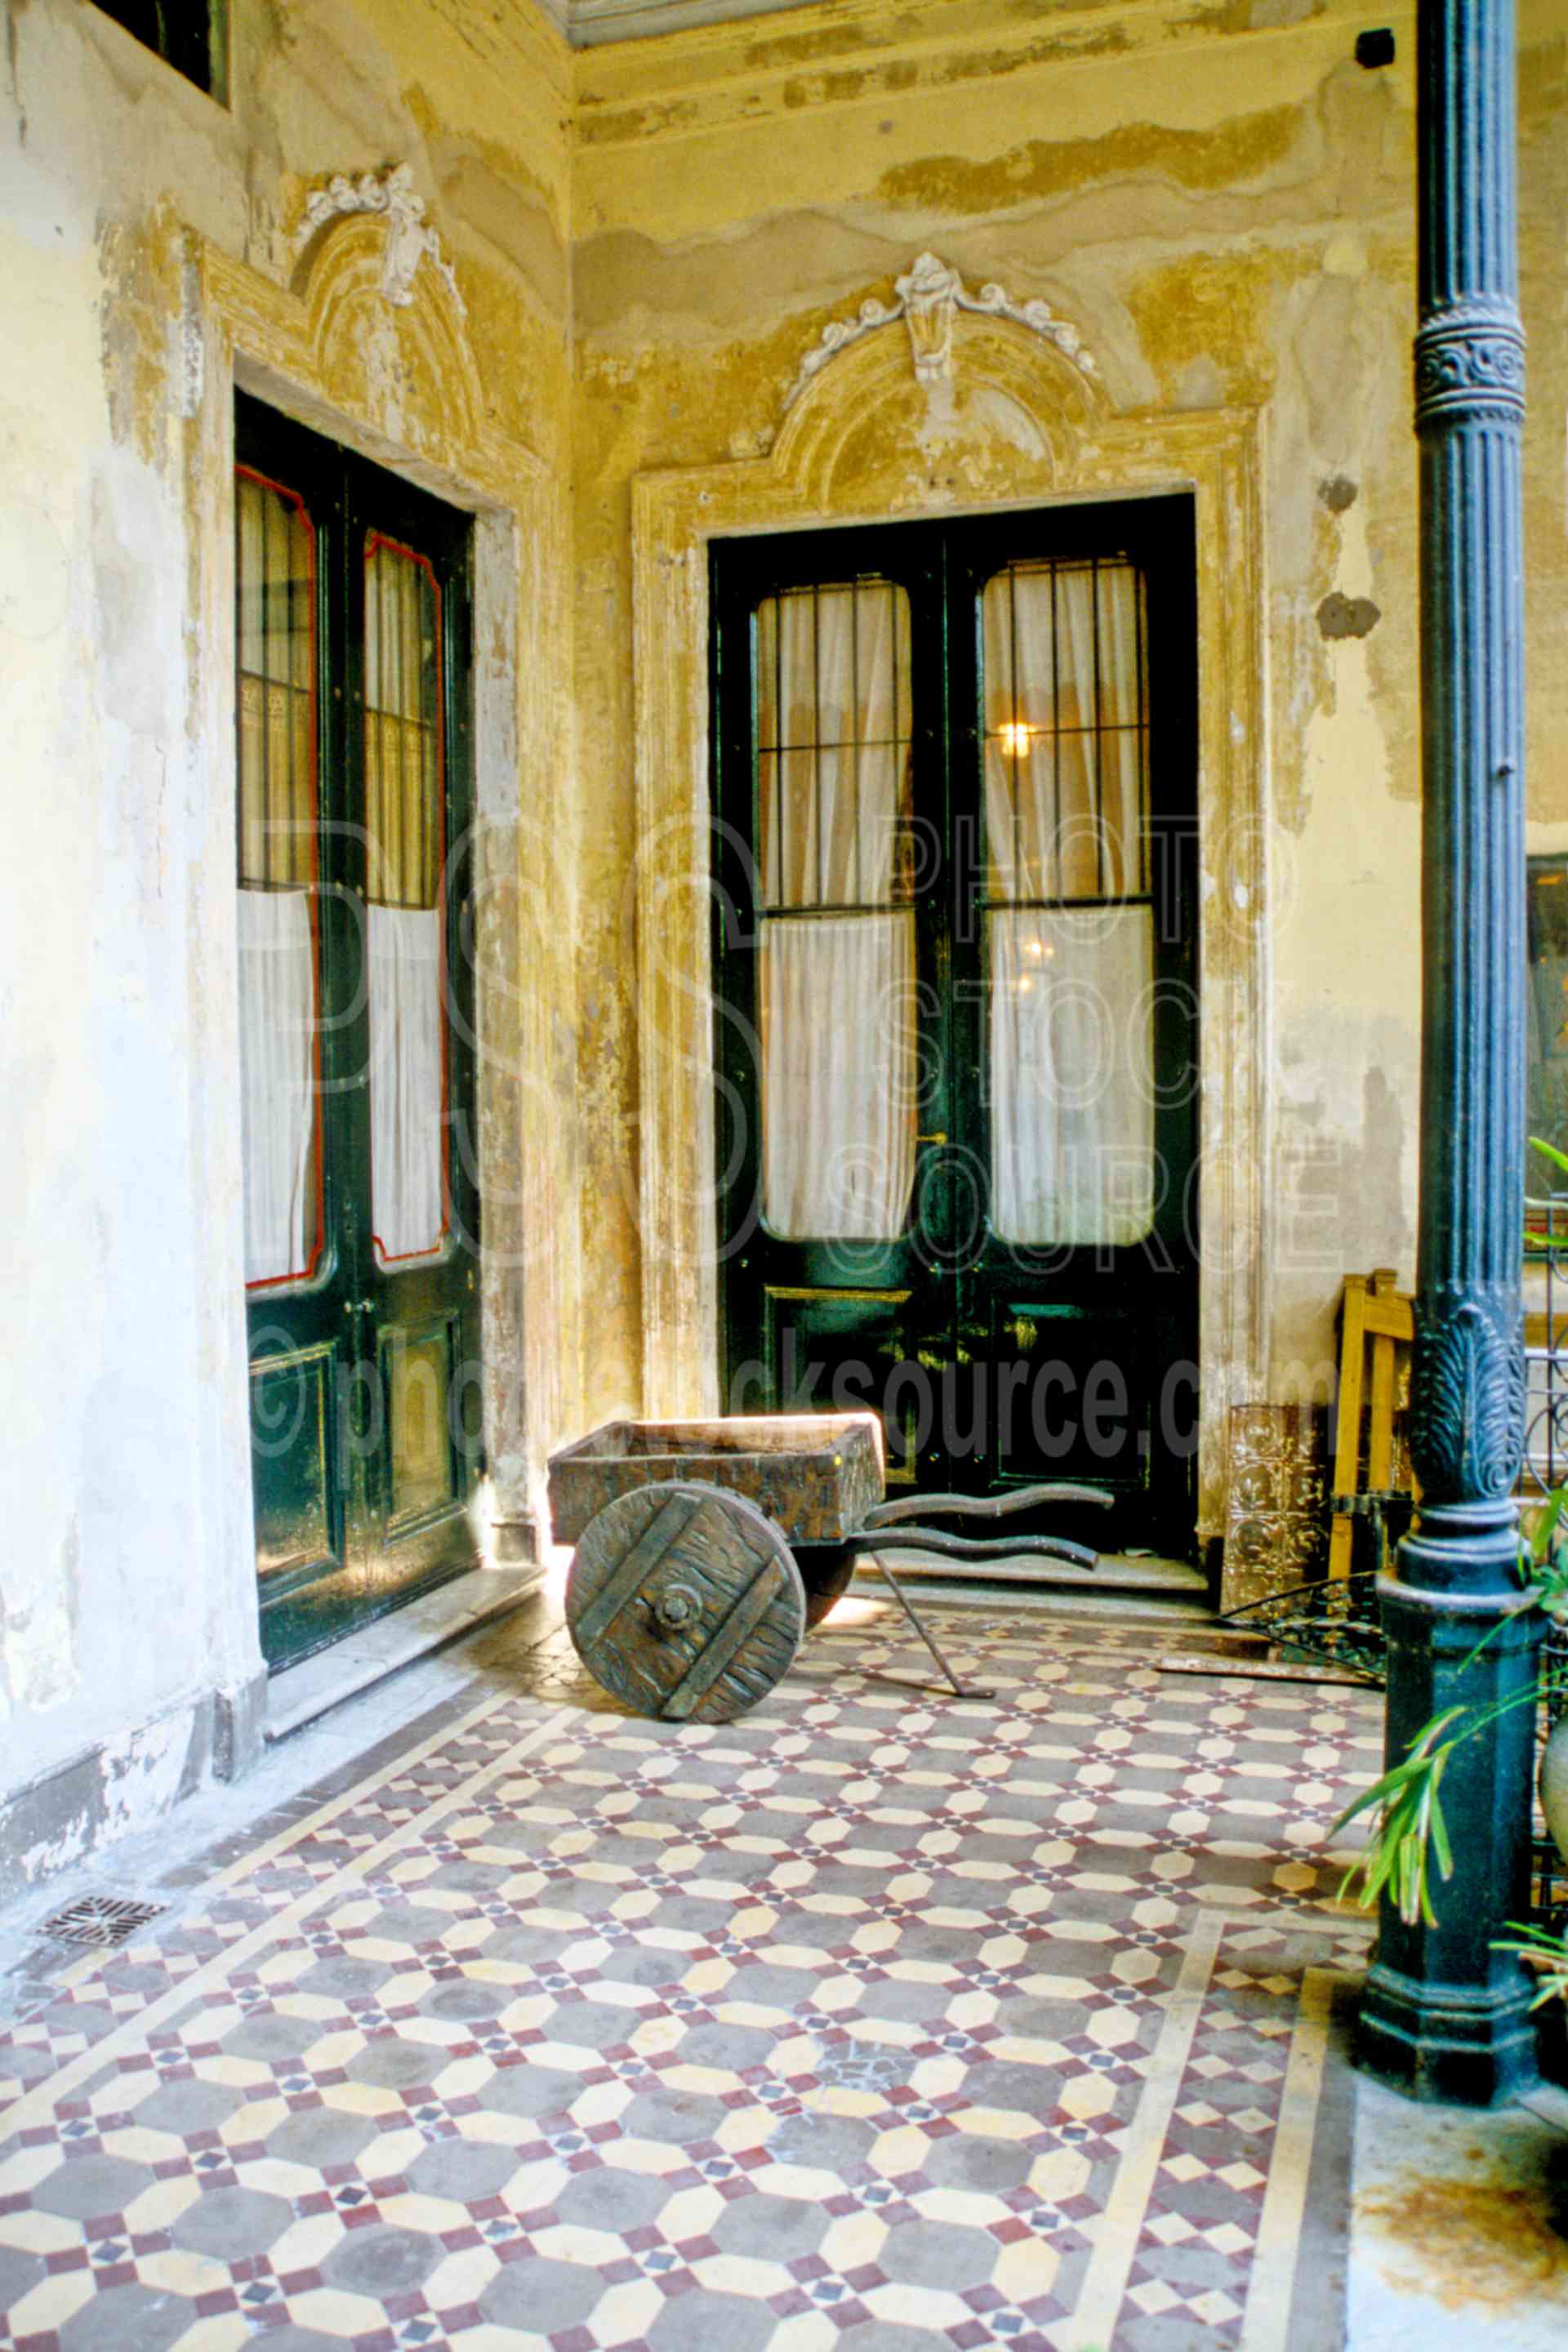 Coventillo Pasaje dela Defensa,tile,argentina doors windows,door,patio,floor